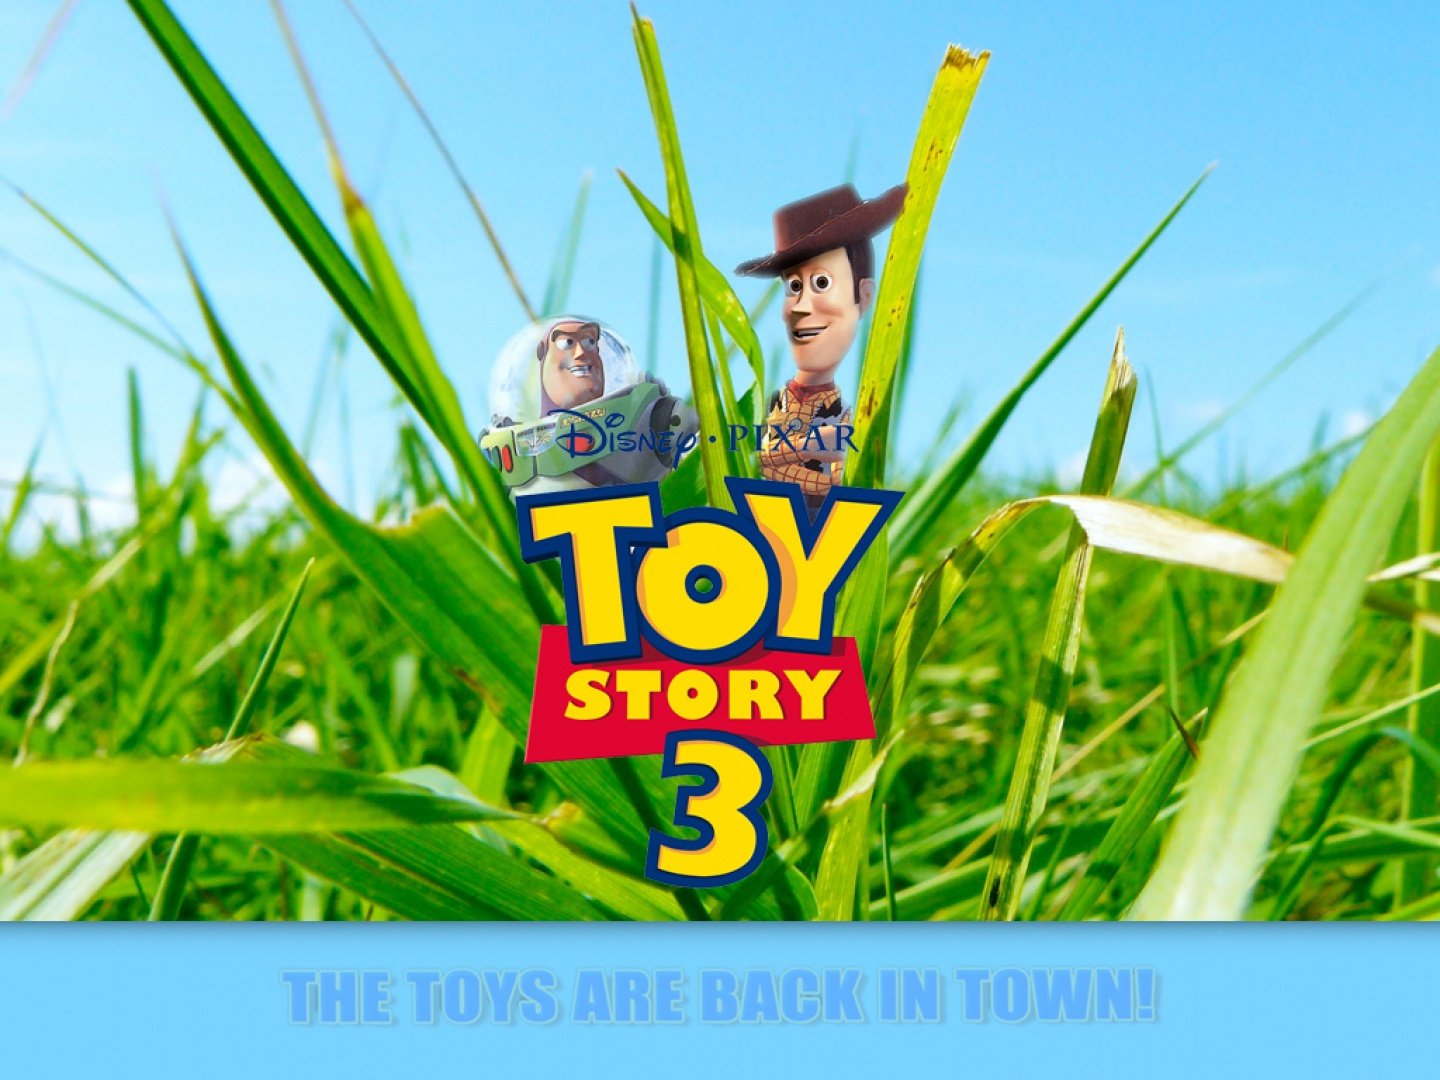 Fondos de Toy Story 3 Fondos de pantalla de Toy Story 3   Cine y TV